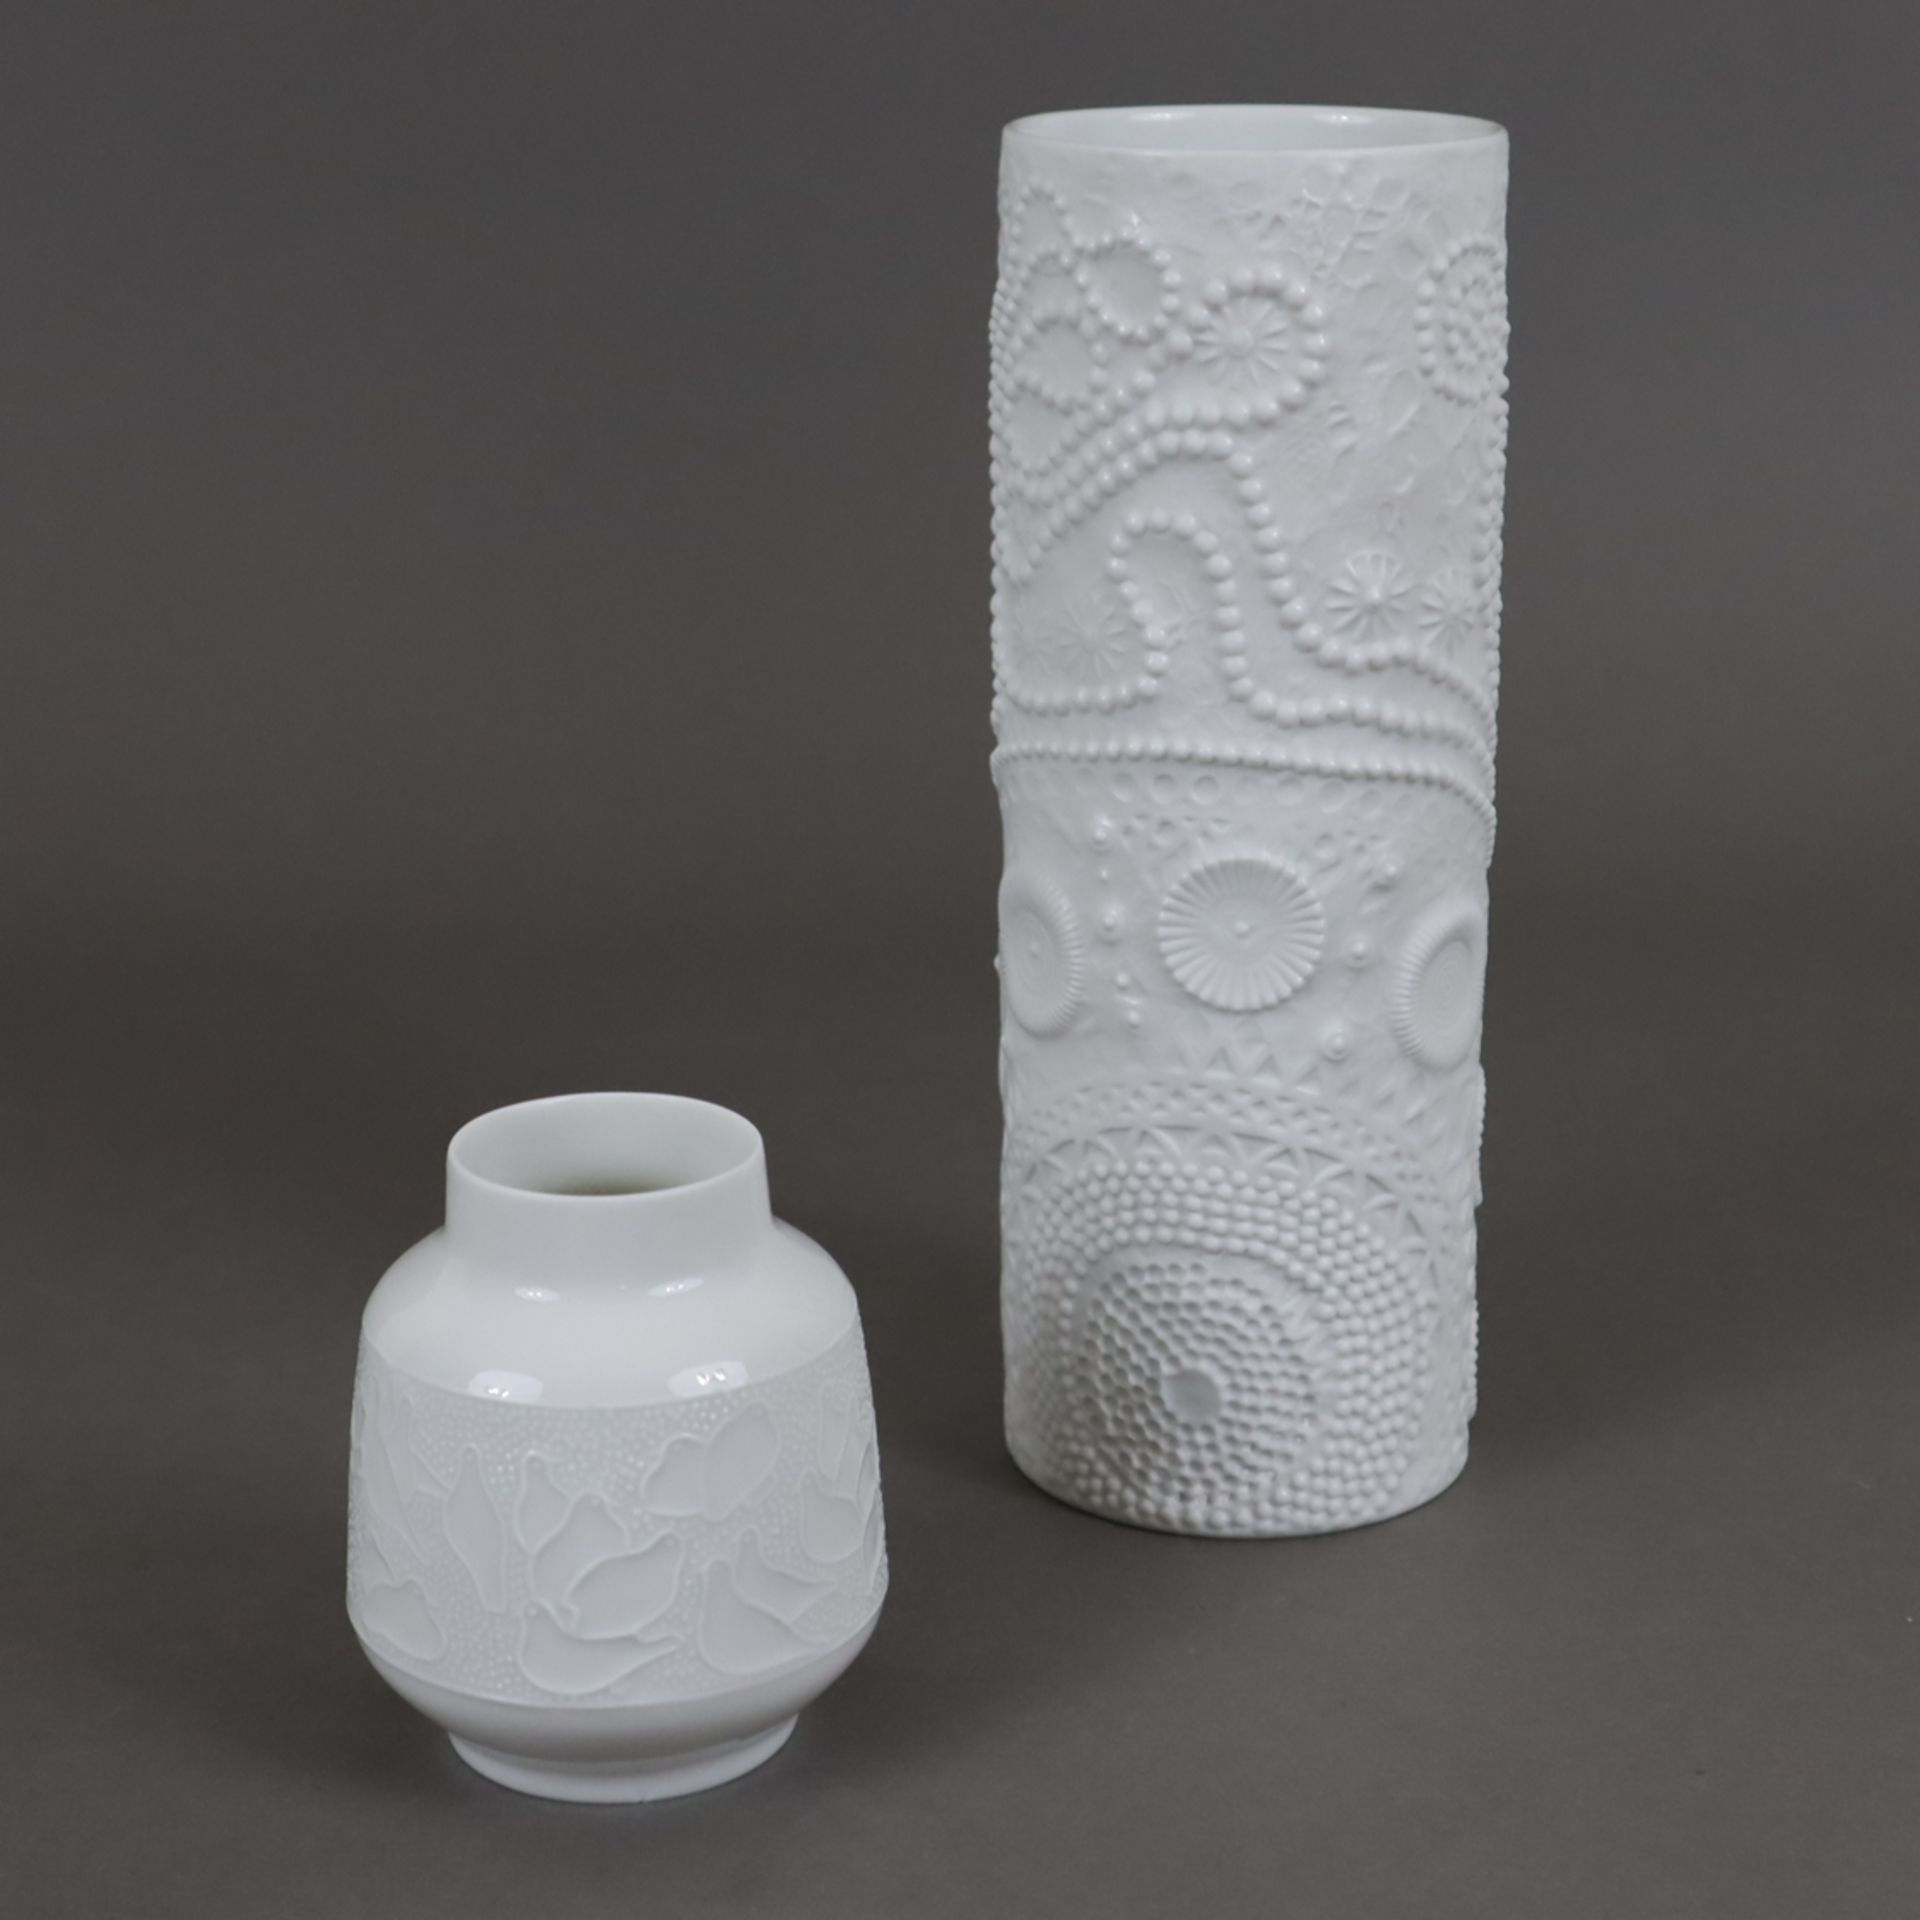 Zwei Vasen mit Struktur-Oberfläche - 1x Rosenthal, Studio-Line, Biskuitporzellan, zylindrische Form